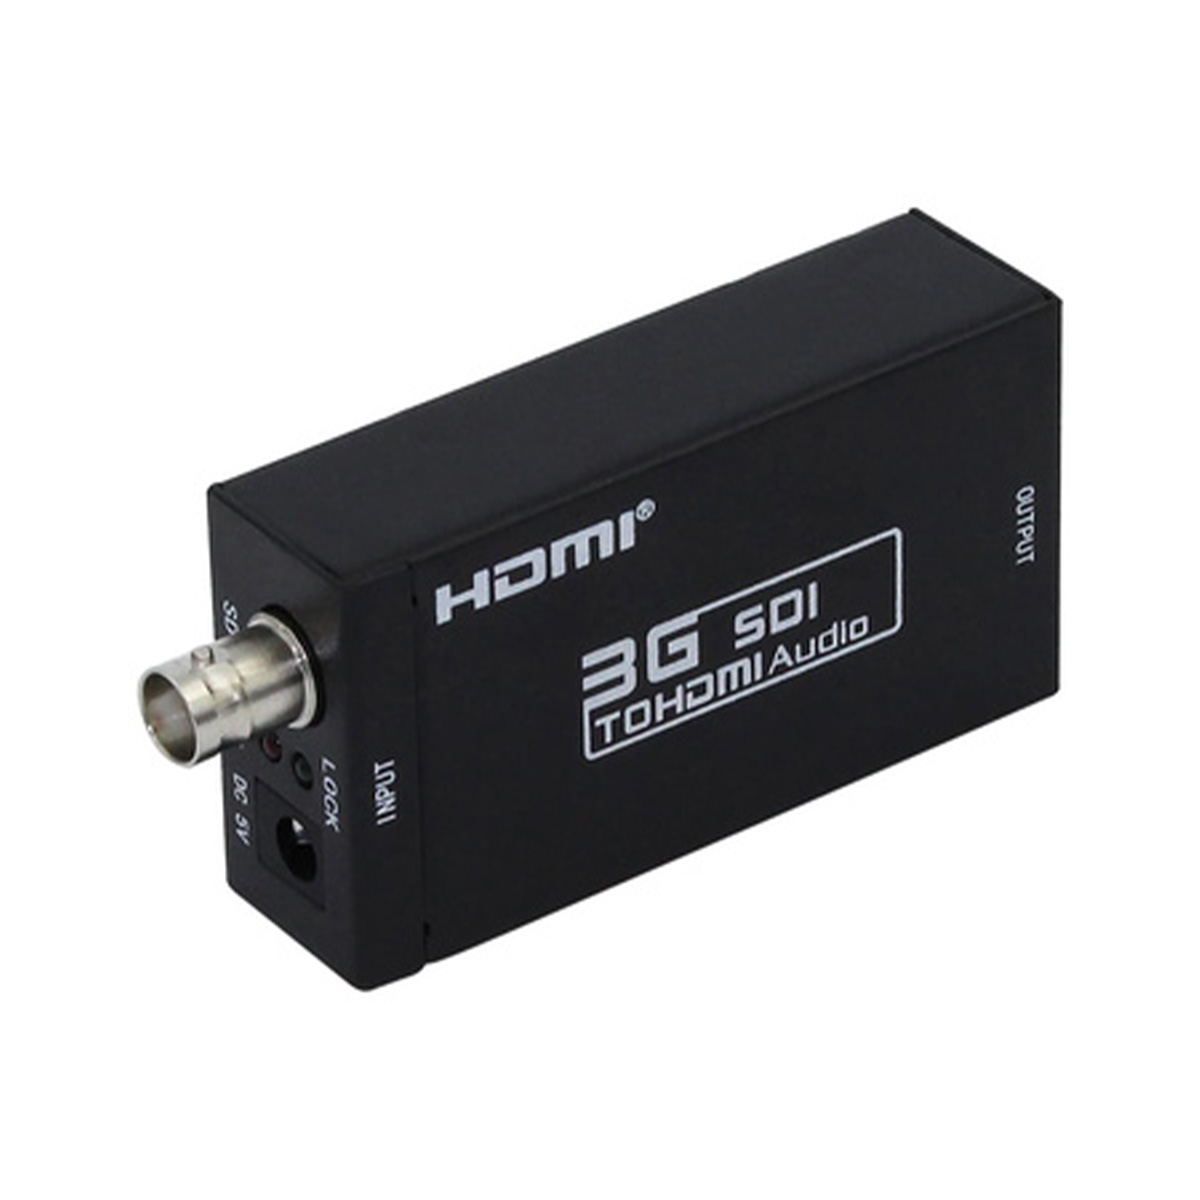 Przesyłanie HDMI-SDI,AHD